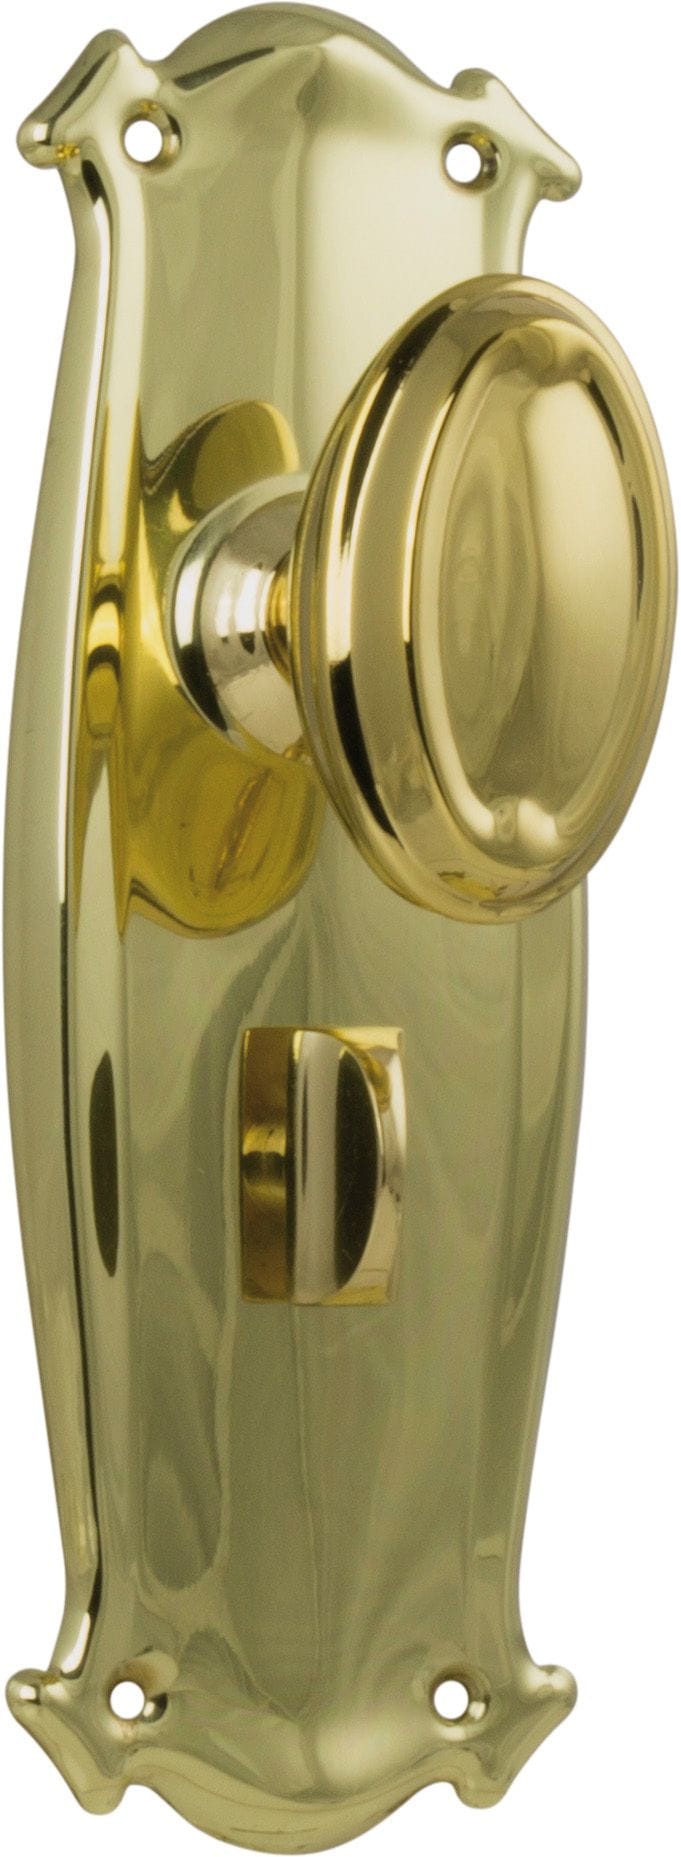 Bungalow Knob Privacy Polished Brass